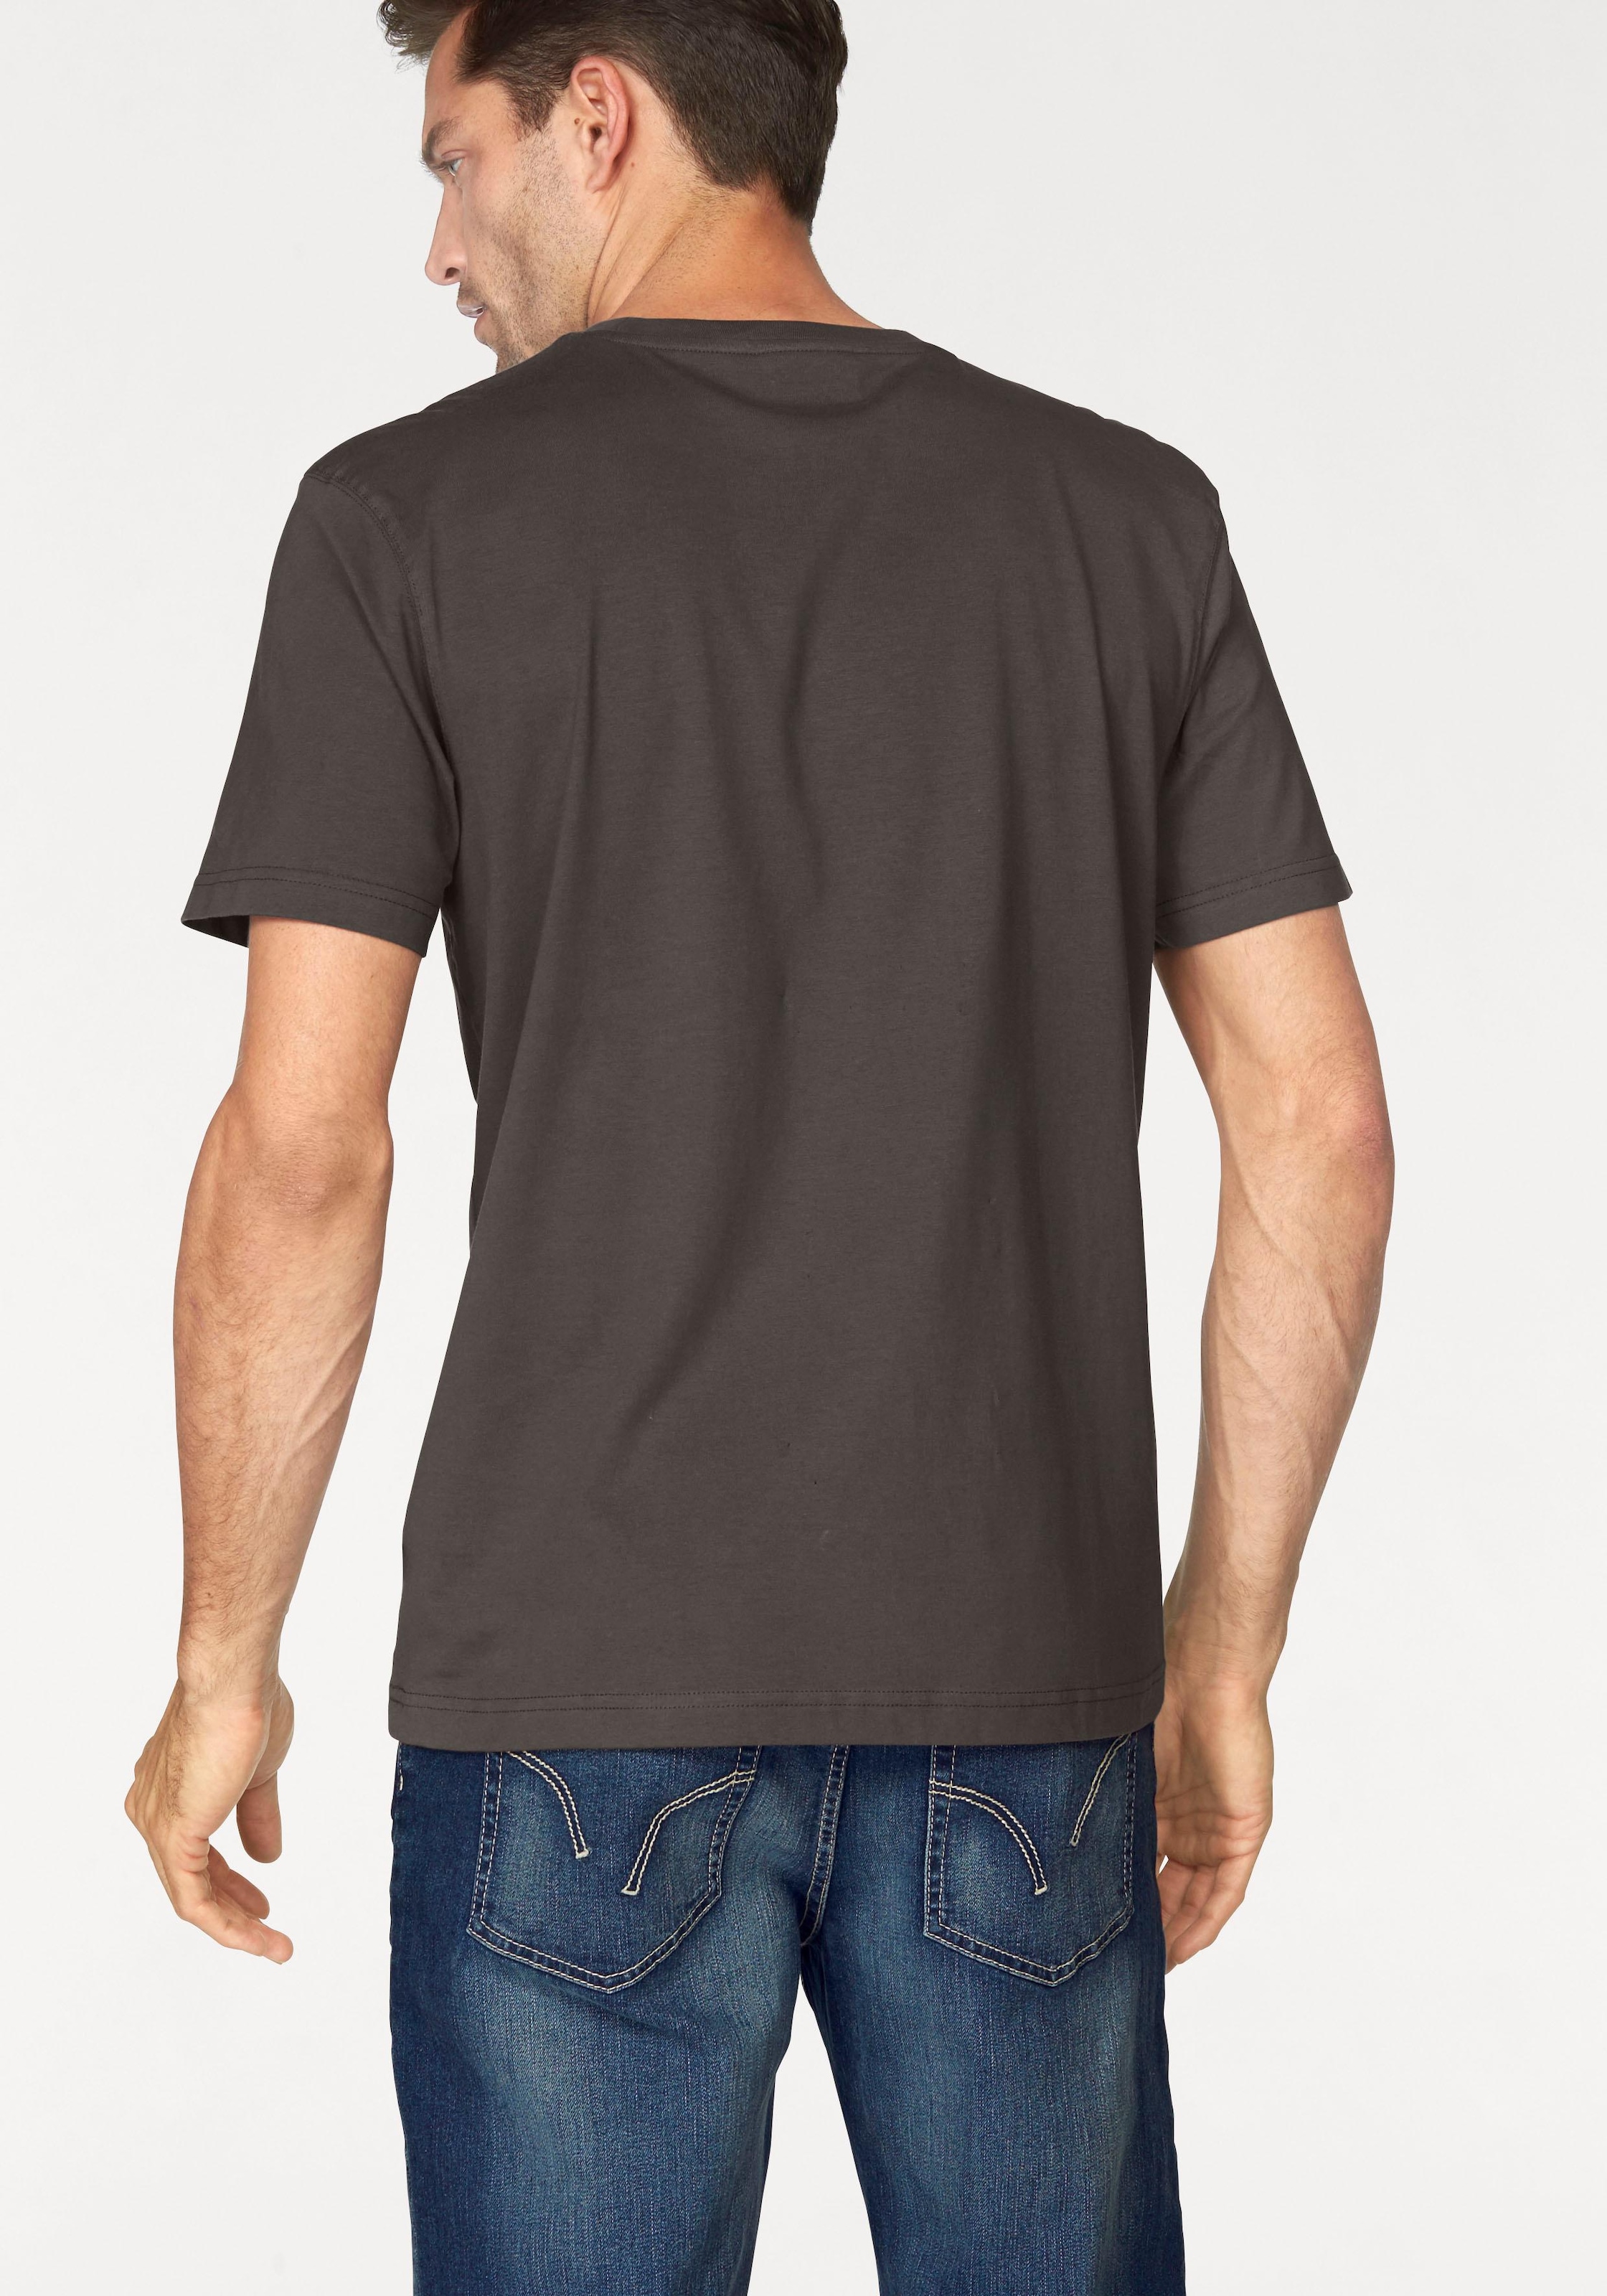 Man's World T-Shirt, perfekt als Unterzieh- T-shirt